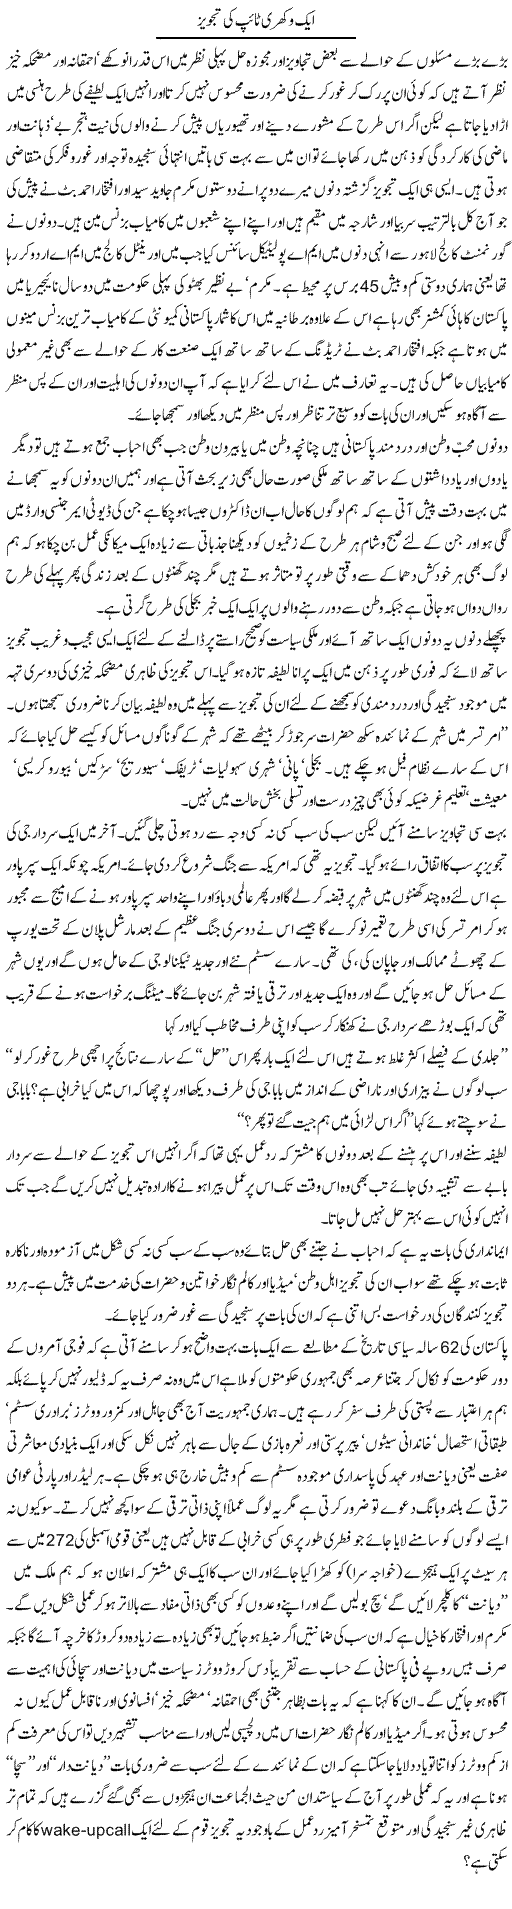 Vakhri tajvez Express Column Amjad Islam 14 March 2010